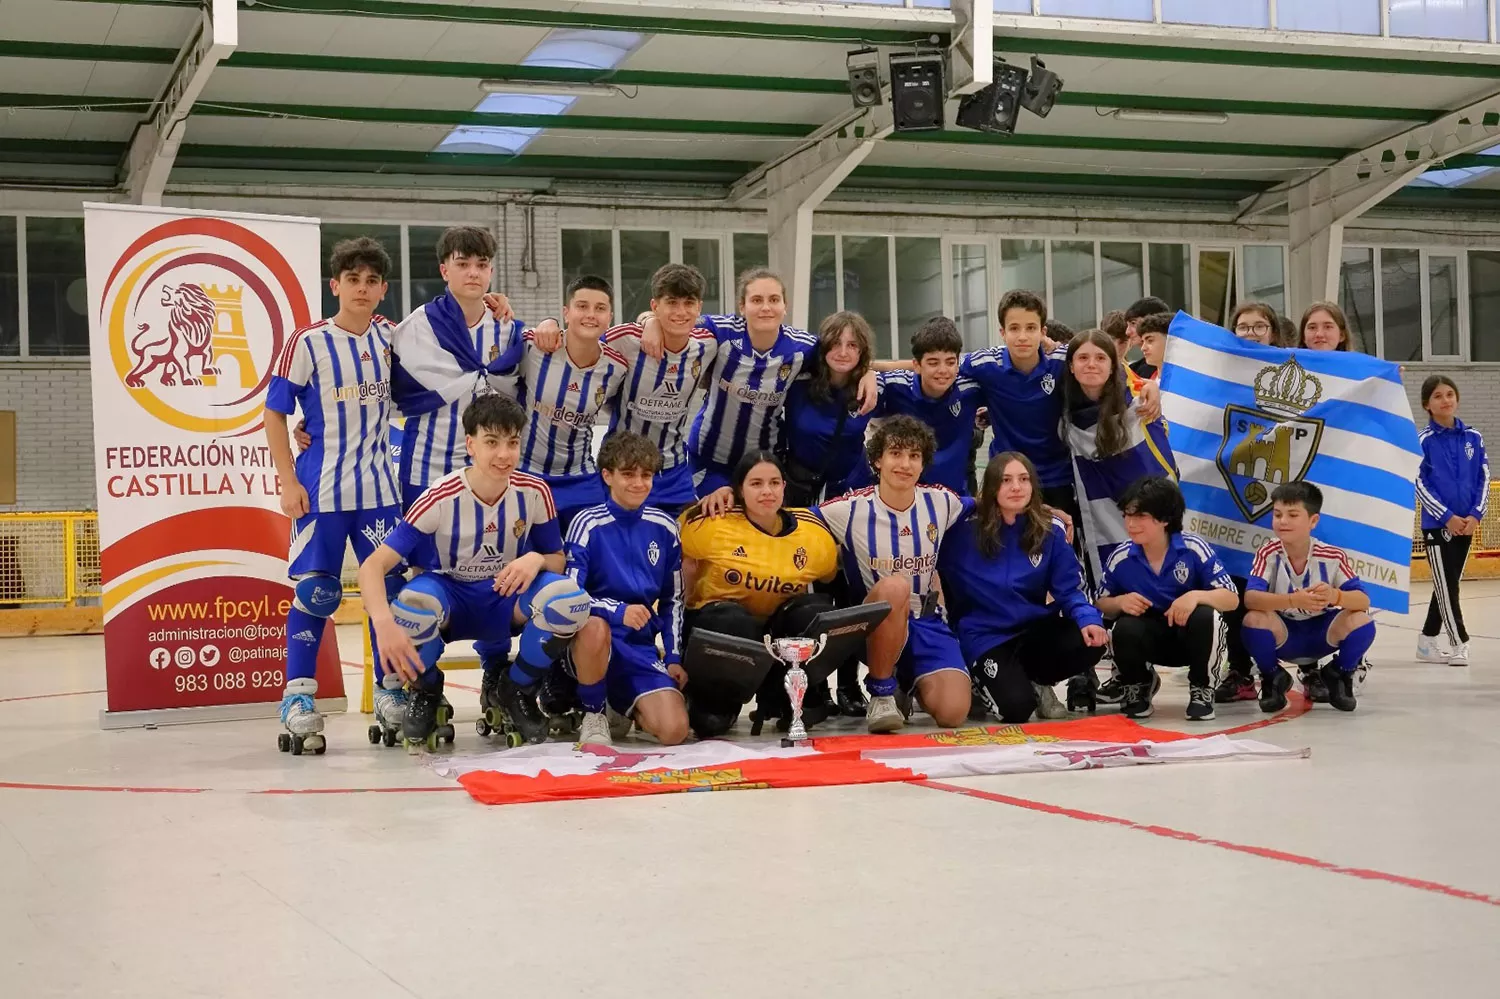 La Ponferradina Hockey cierra la temporada coronándose campeón de Copa de CyL en categoría Juvenil